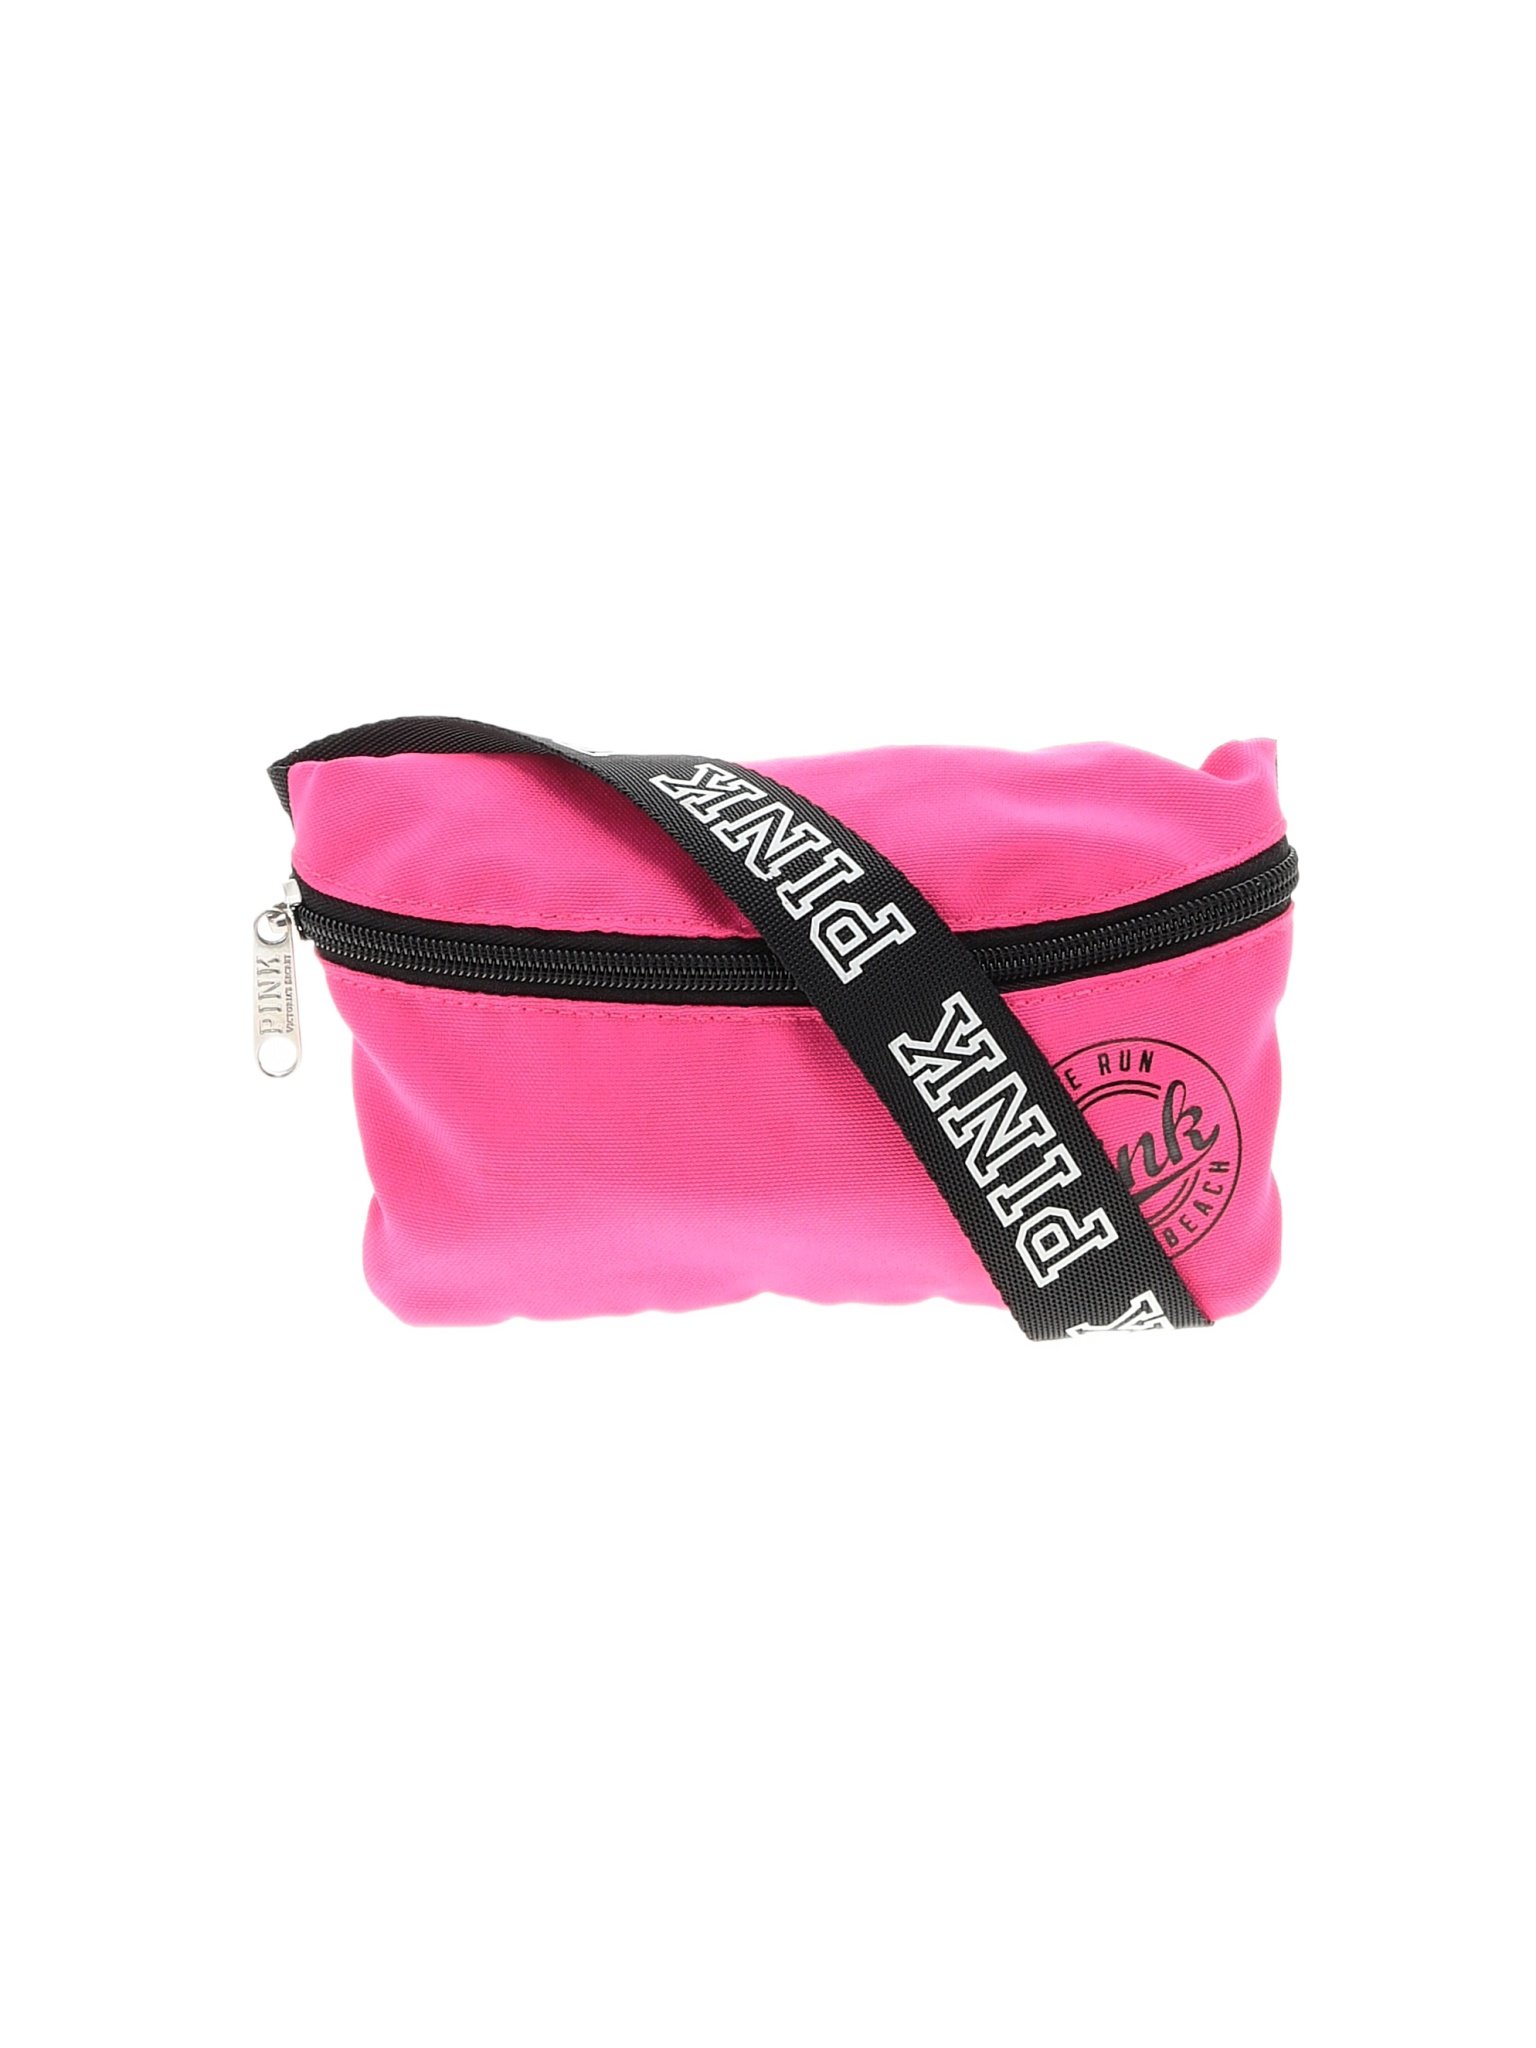 Victoria's Secret Pink Color Block Solid Pink Belt Bag One Size - 50% ...